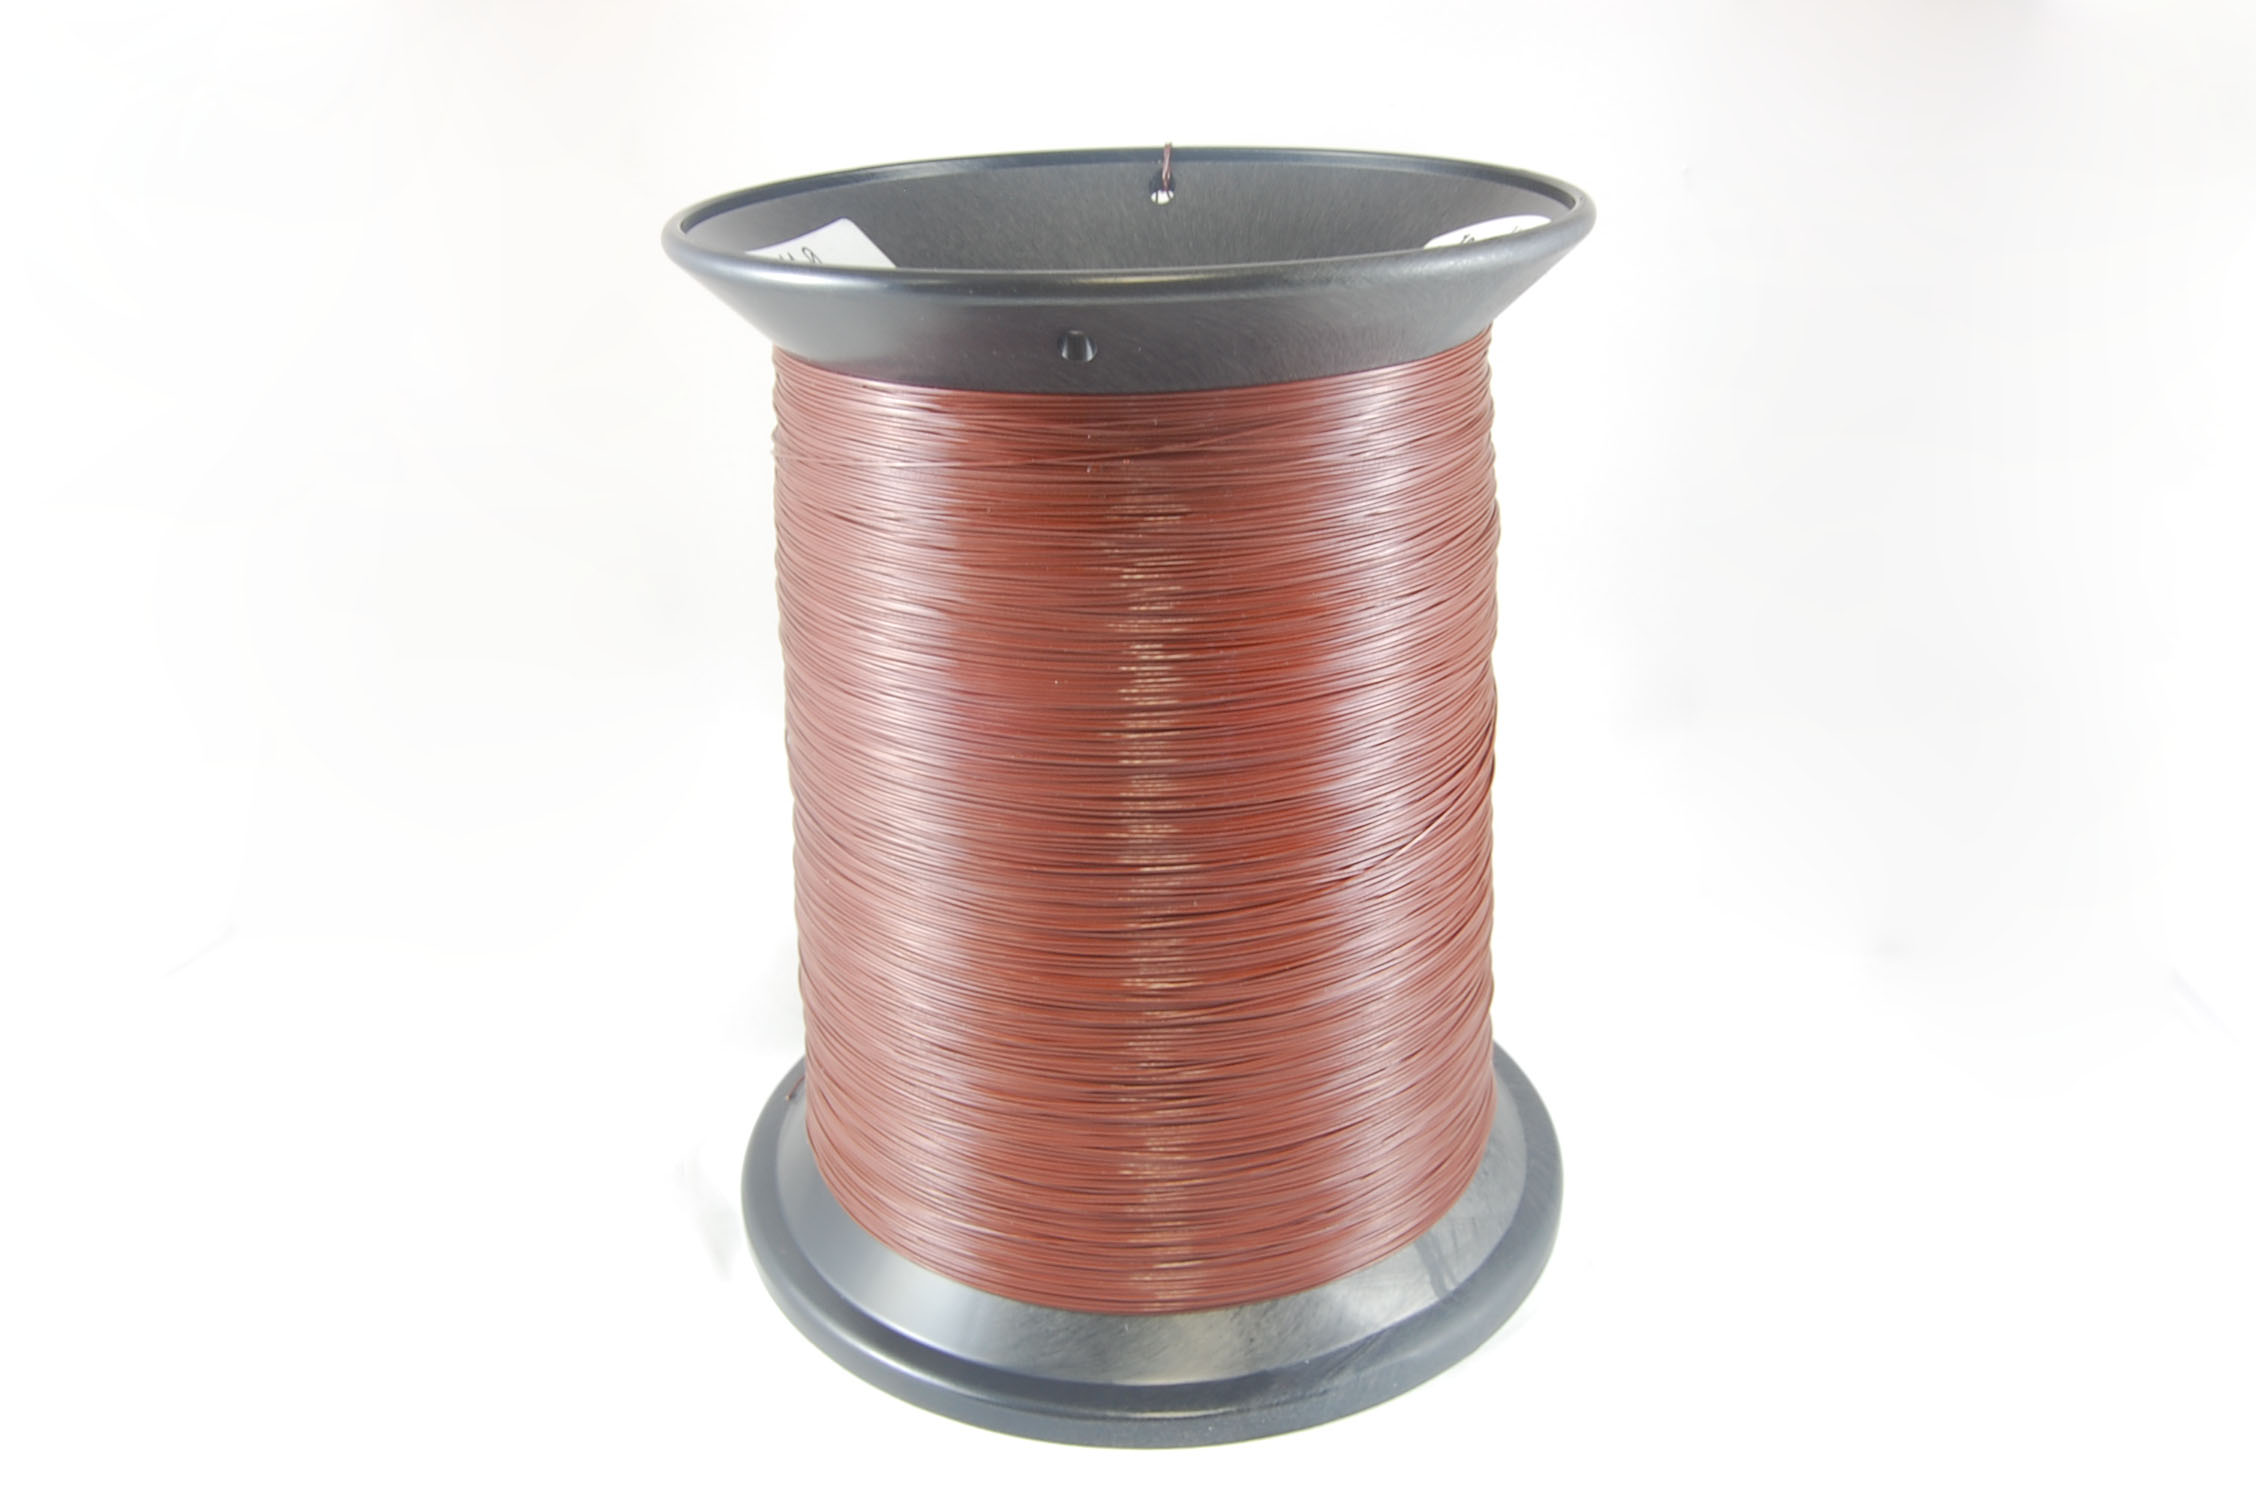 #26 Heavy Ultra Shield Plus (Inverter Duty) Round MW 35 Copper Magnet Wire 200°C, copper, 85 LB box (average wght.)